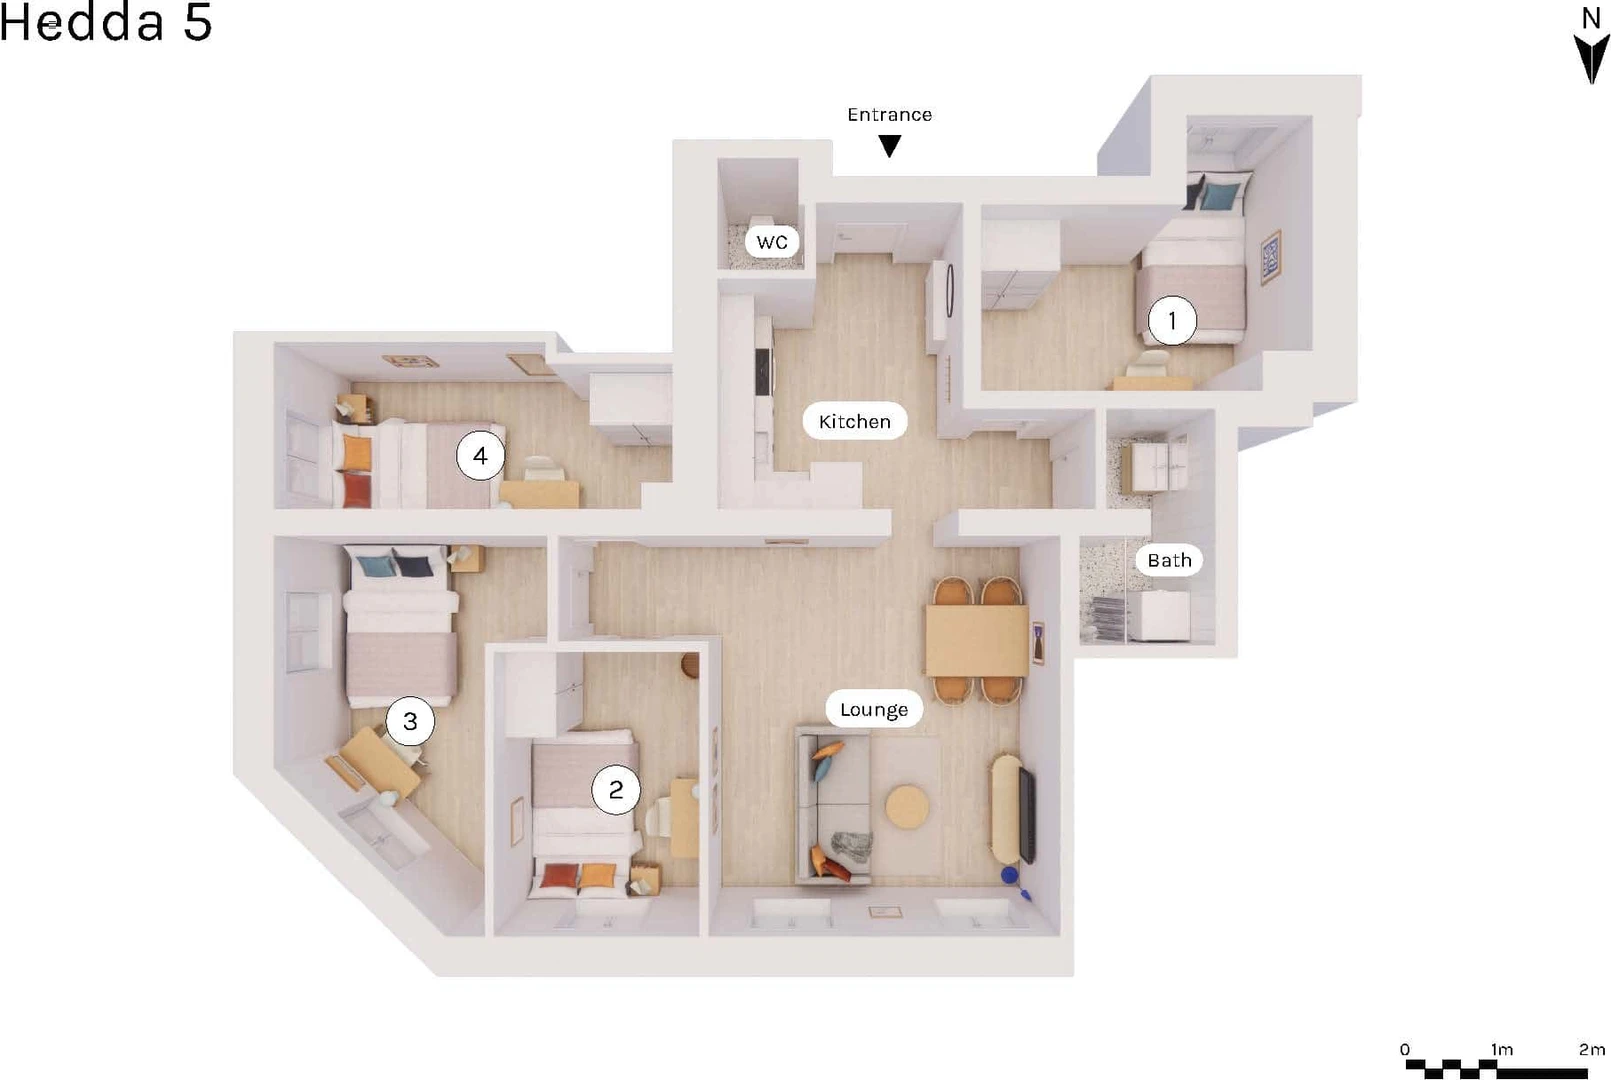 Habitación en alquiler con cama doble Oslo